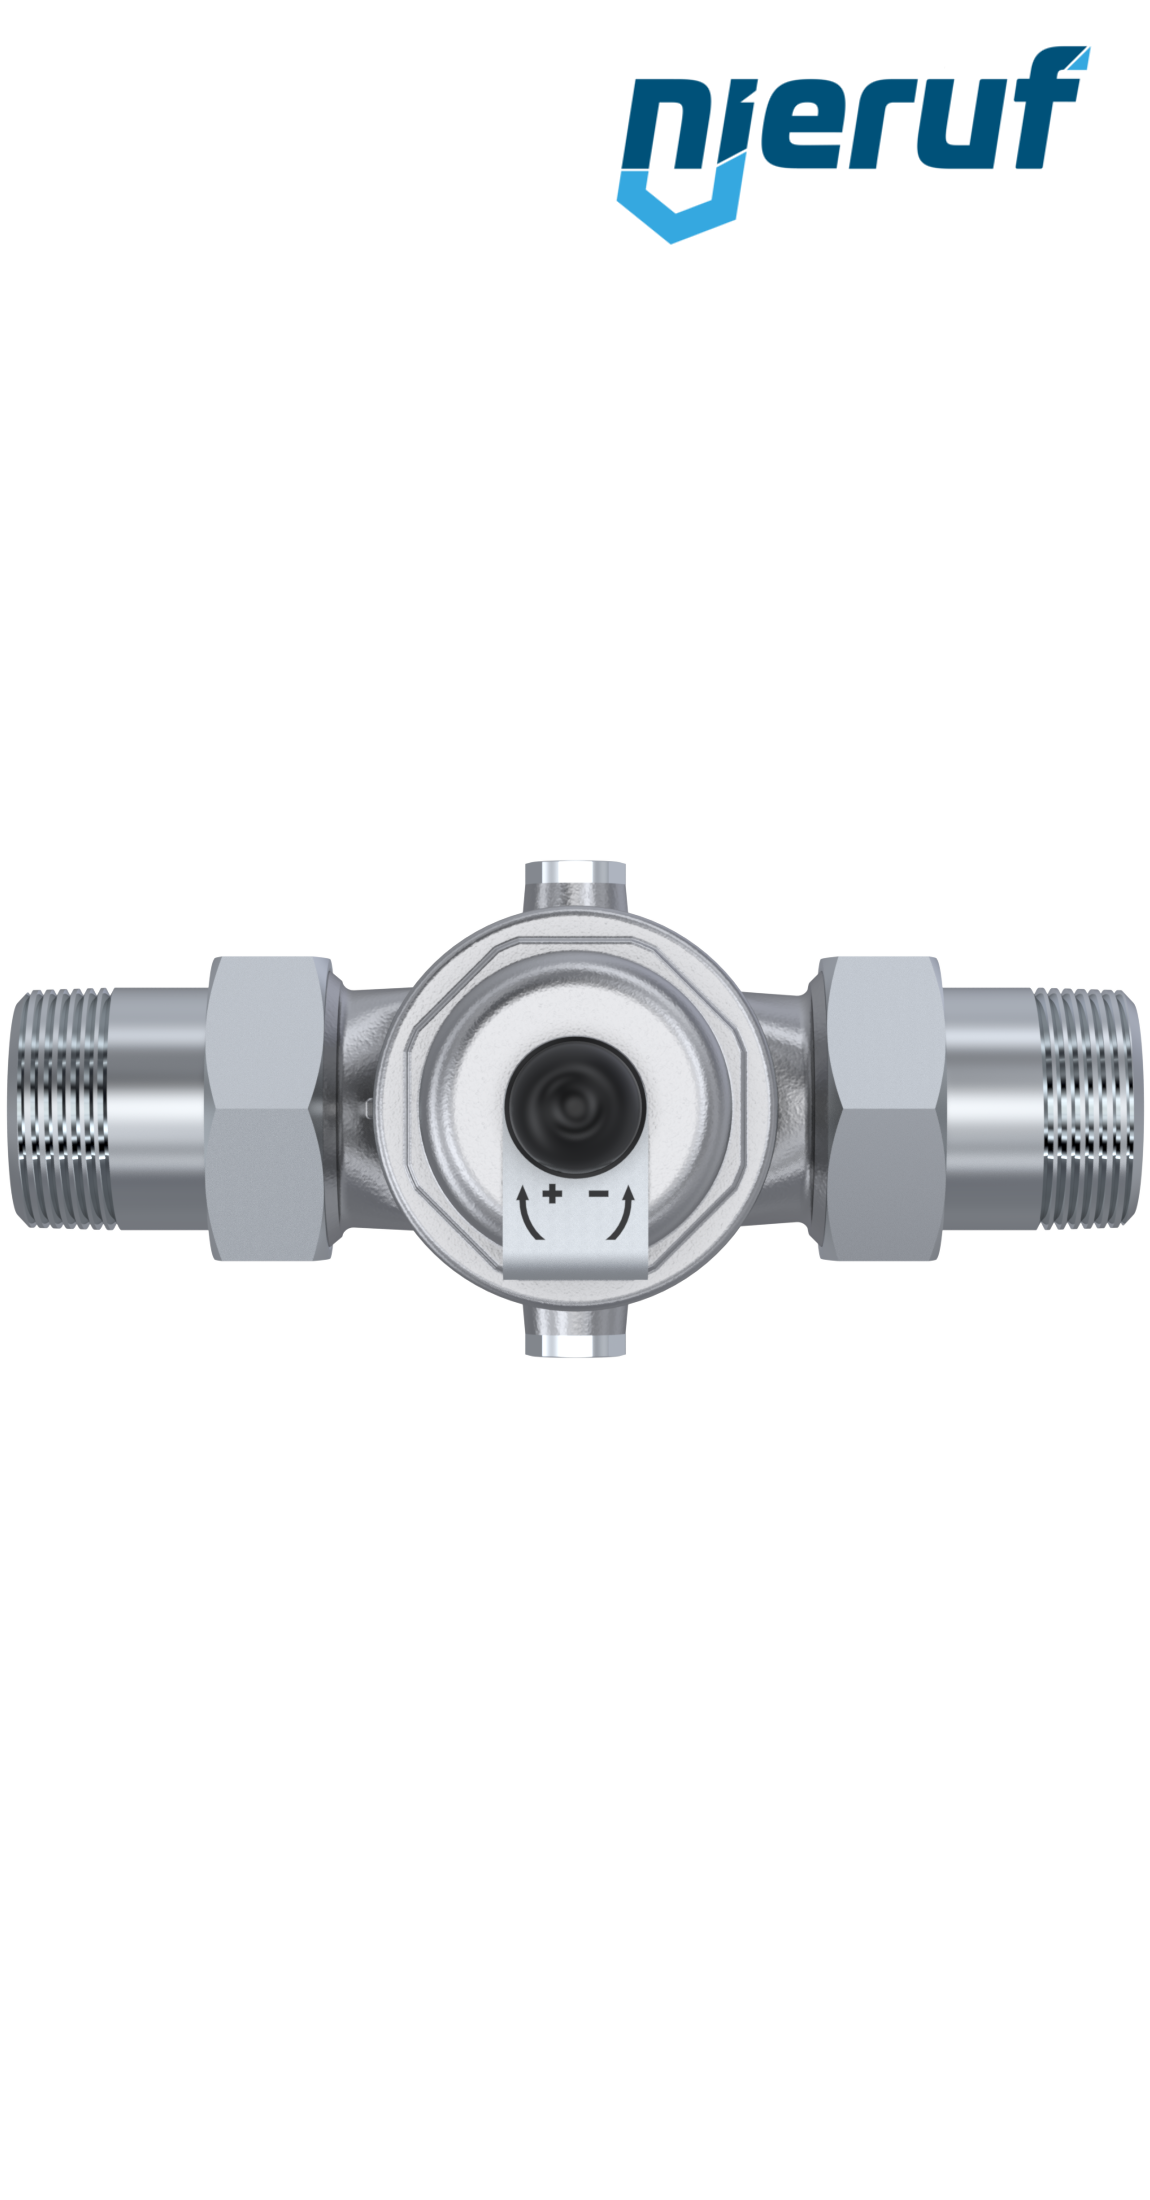 pressure reducing valve 1 1/2" inch male thread DM04 stainless steel FKM 5.0 - 15.0 bar